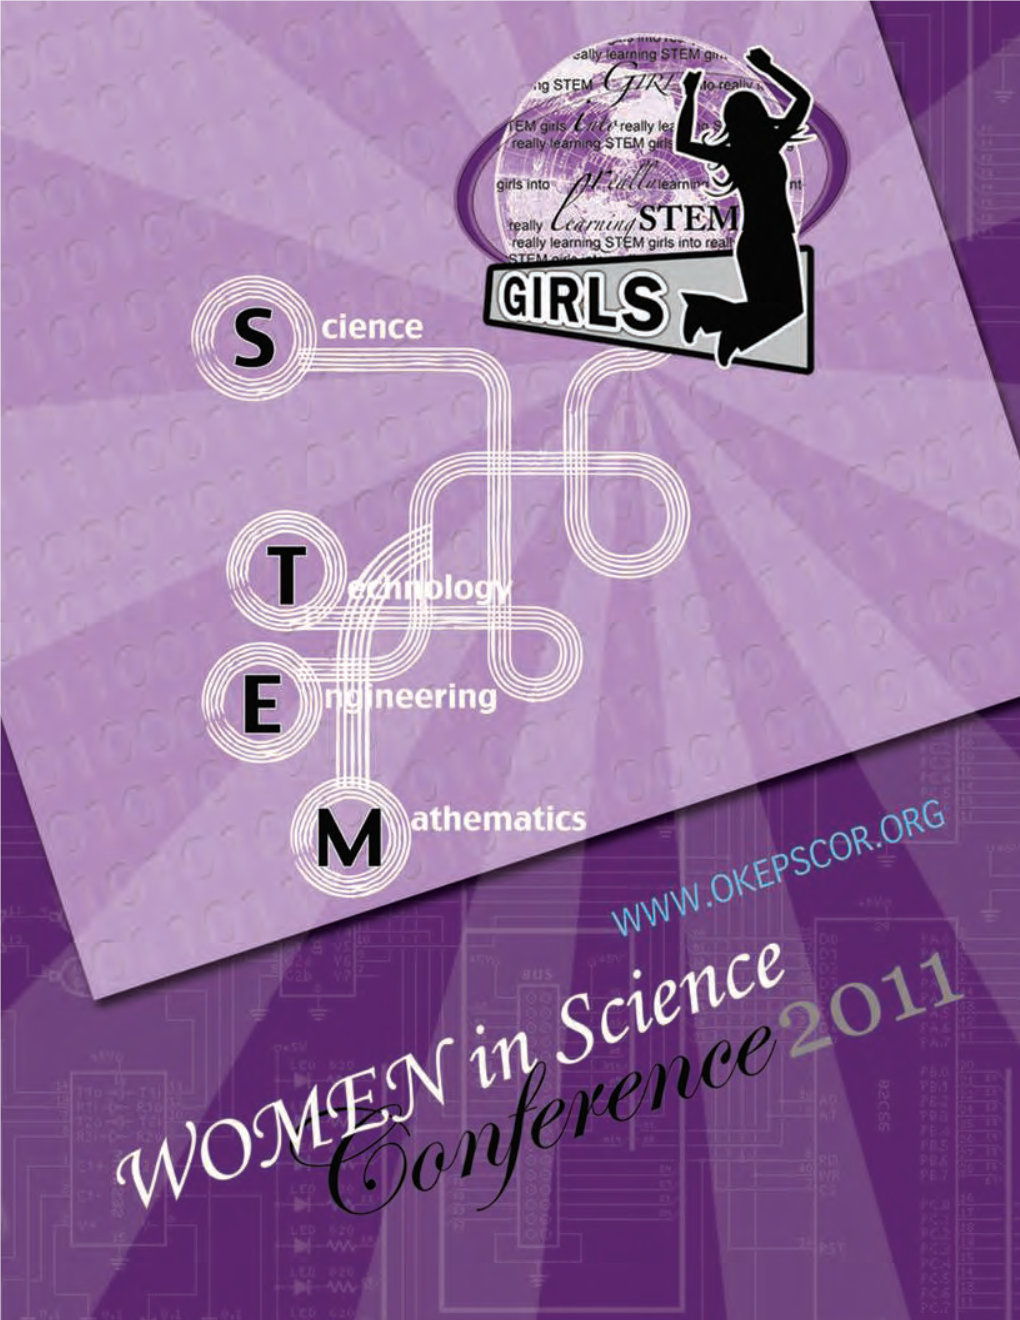 Women in Science 2011 Event Program.Pdf